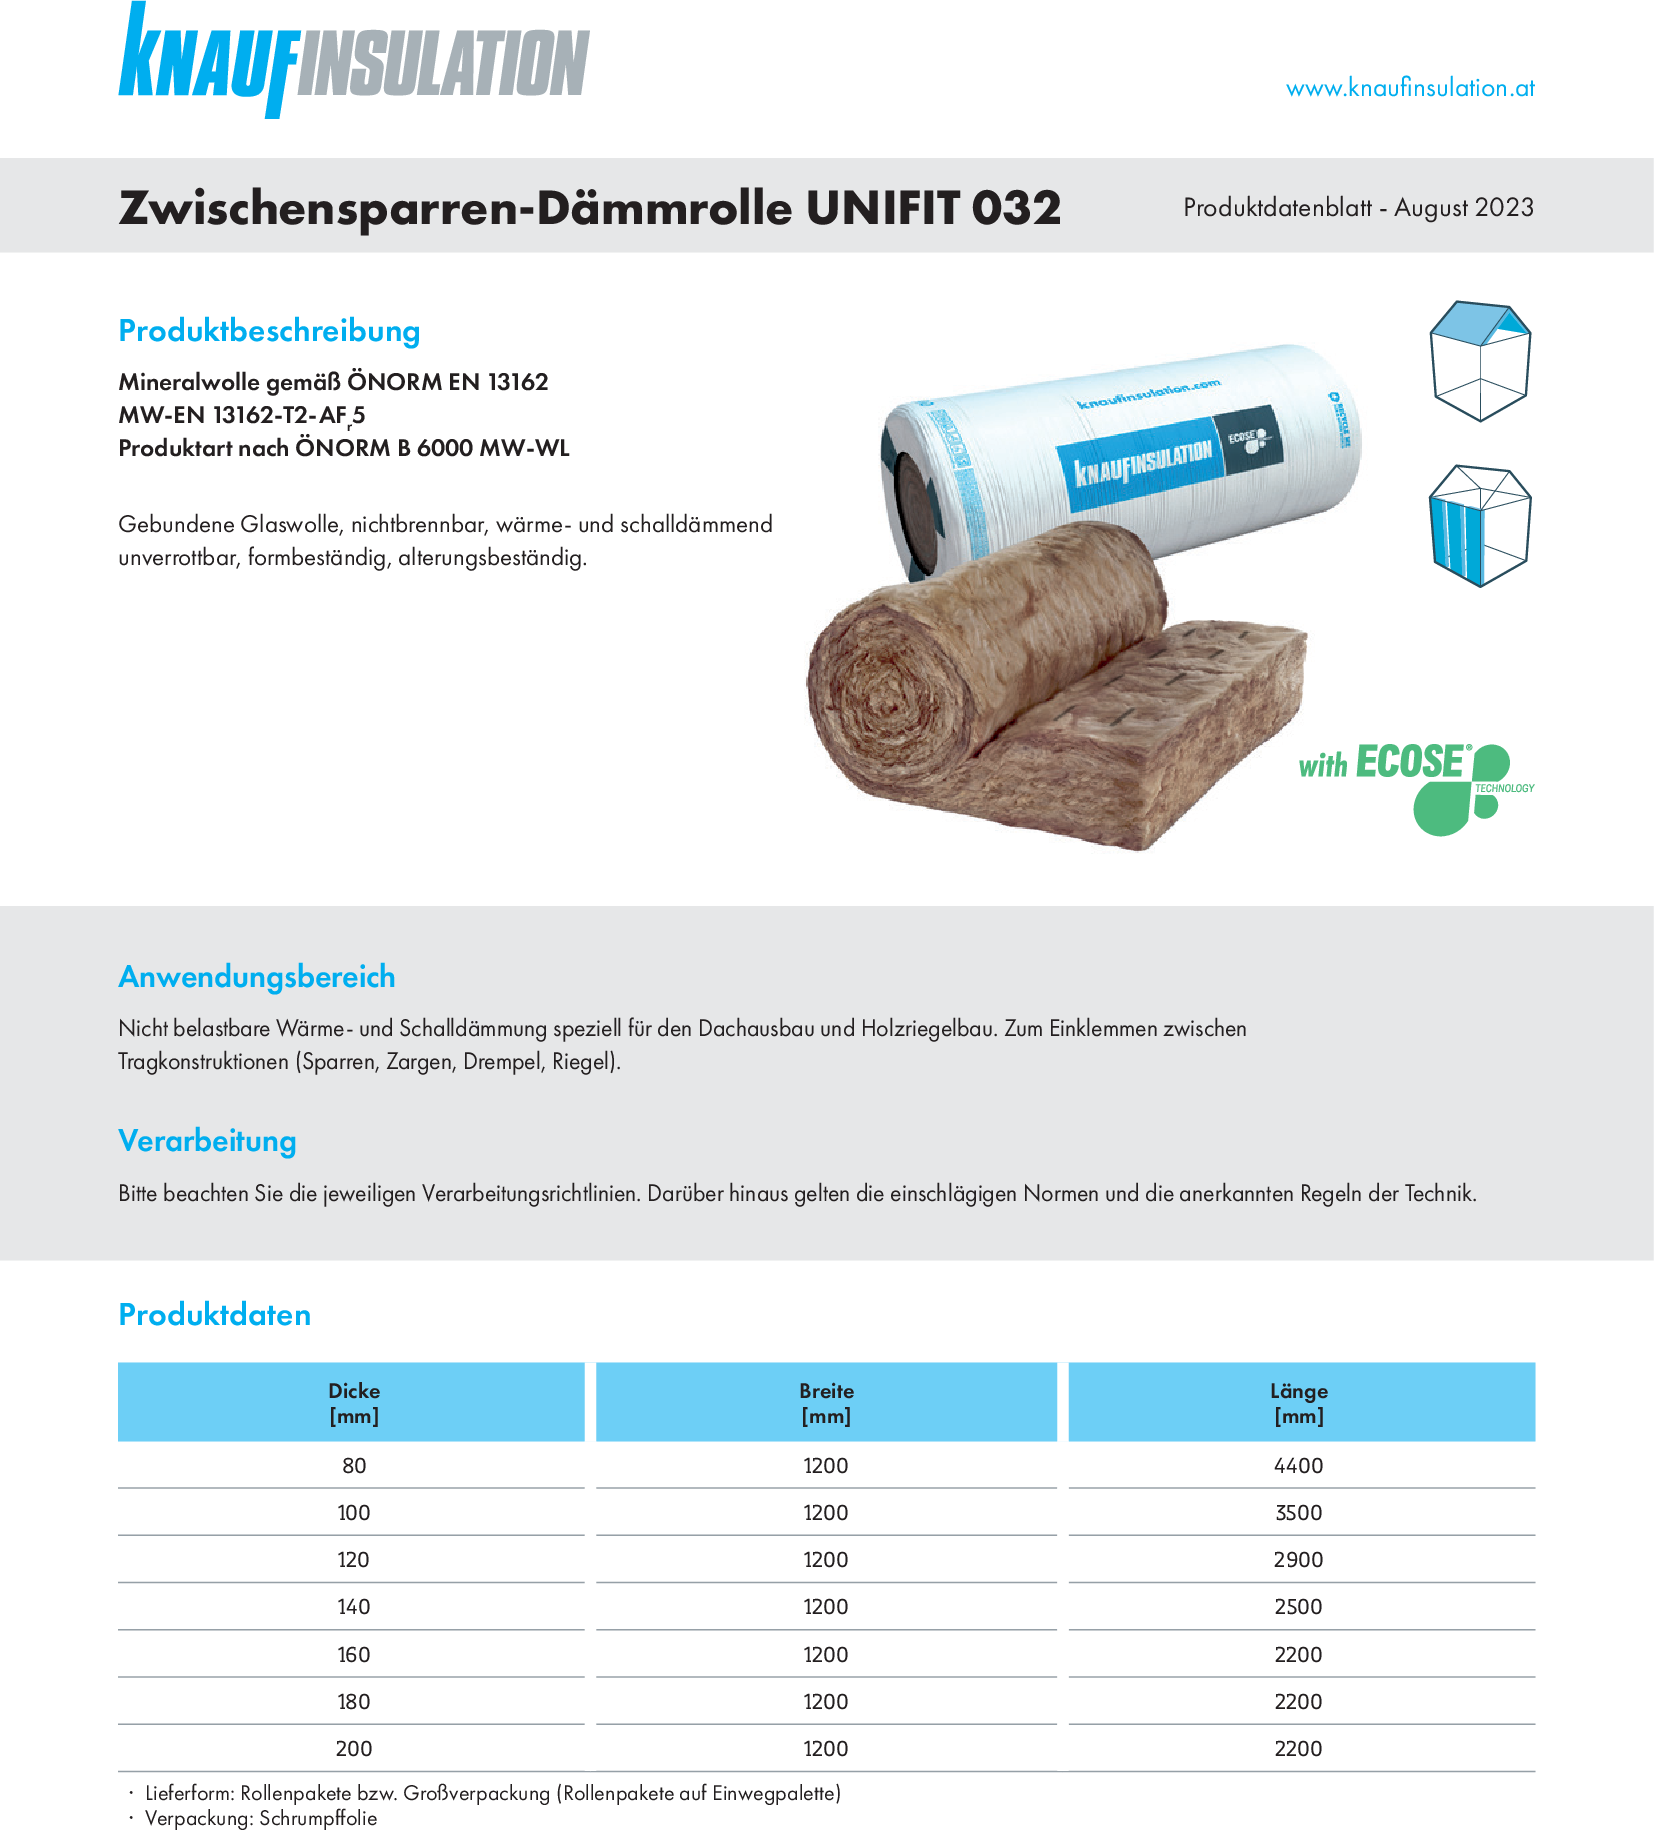 Zwischensparren-Dämmrolle UNIFIT 032, Produktdatenblatt